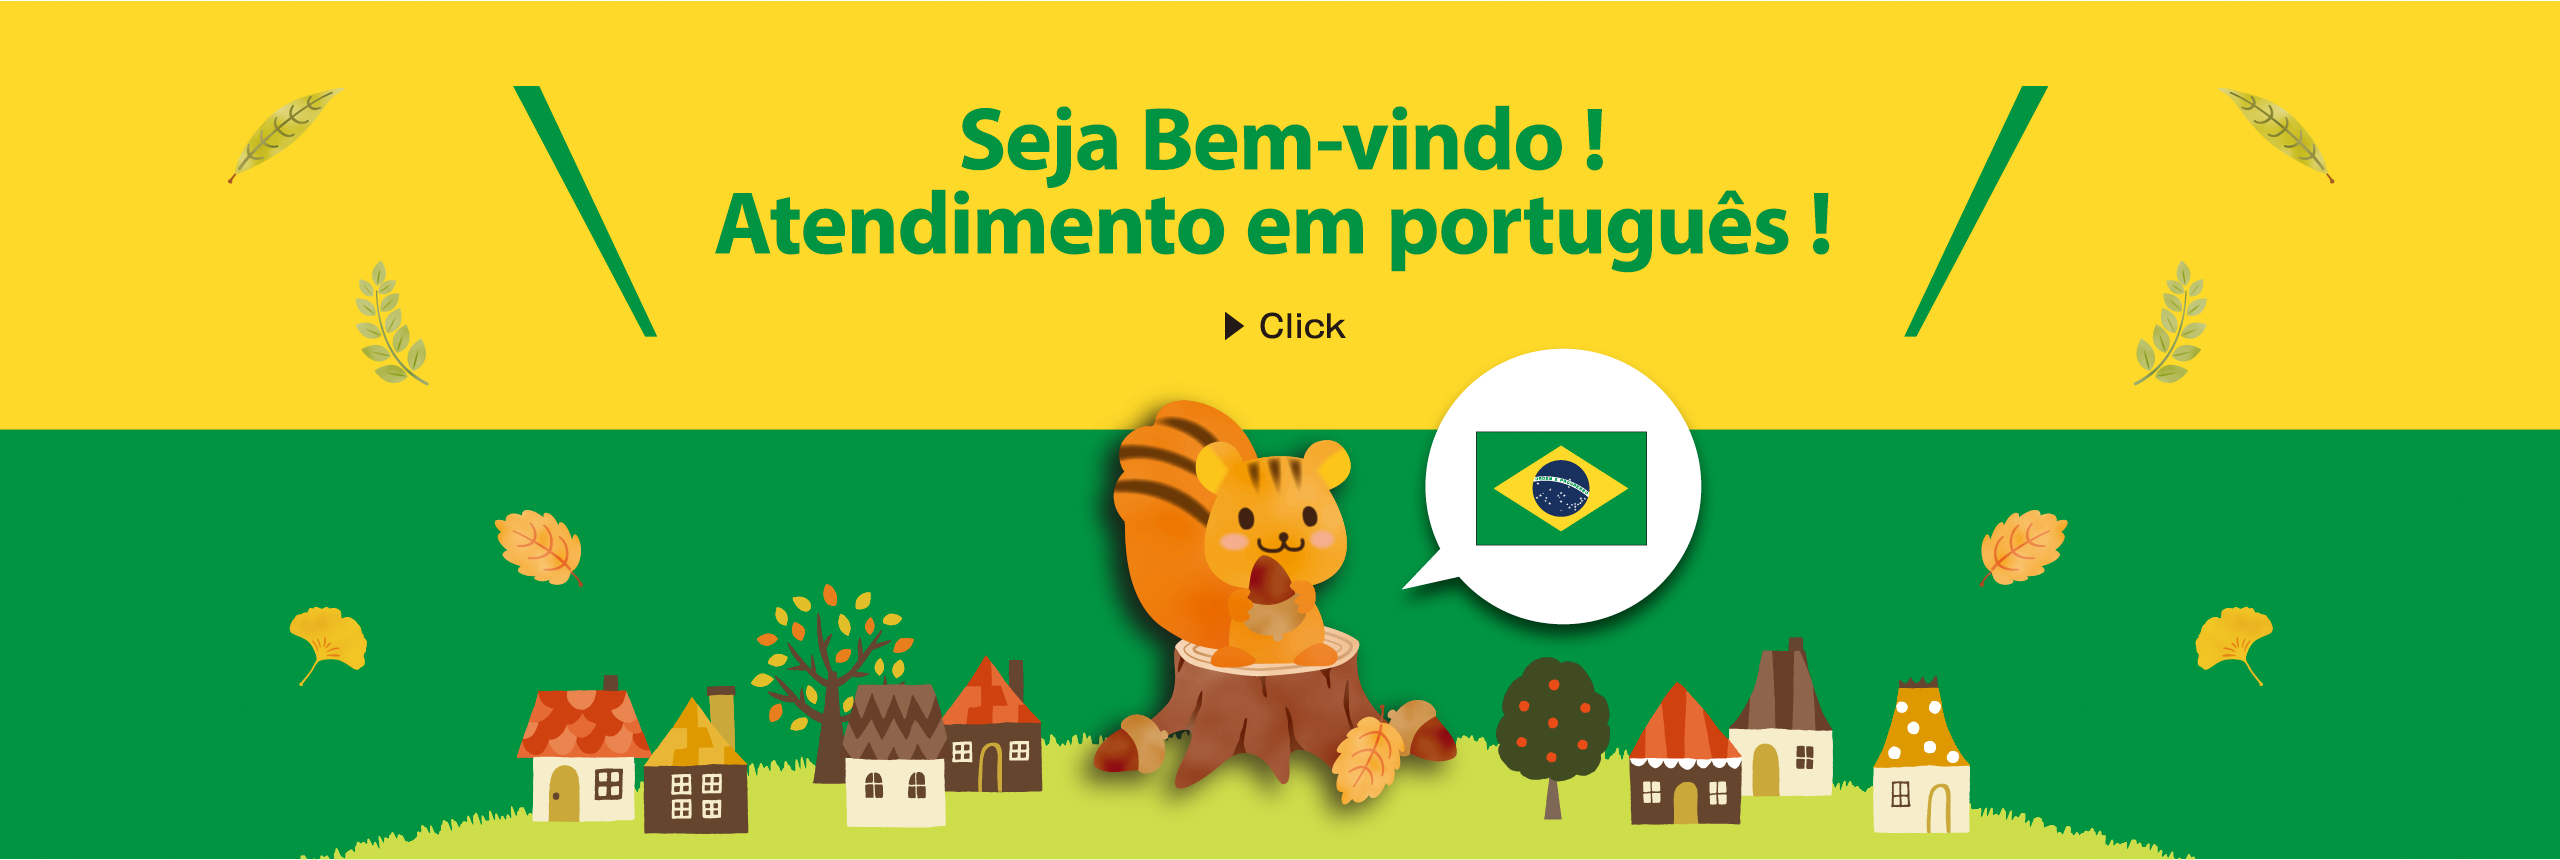 Seja Ben-vido! Atendimento em português!